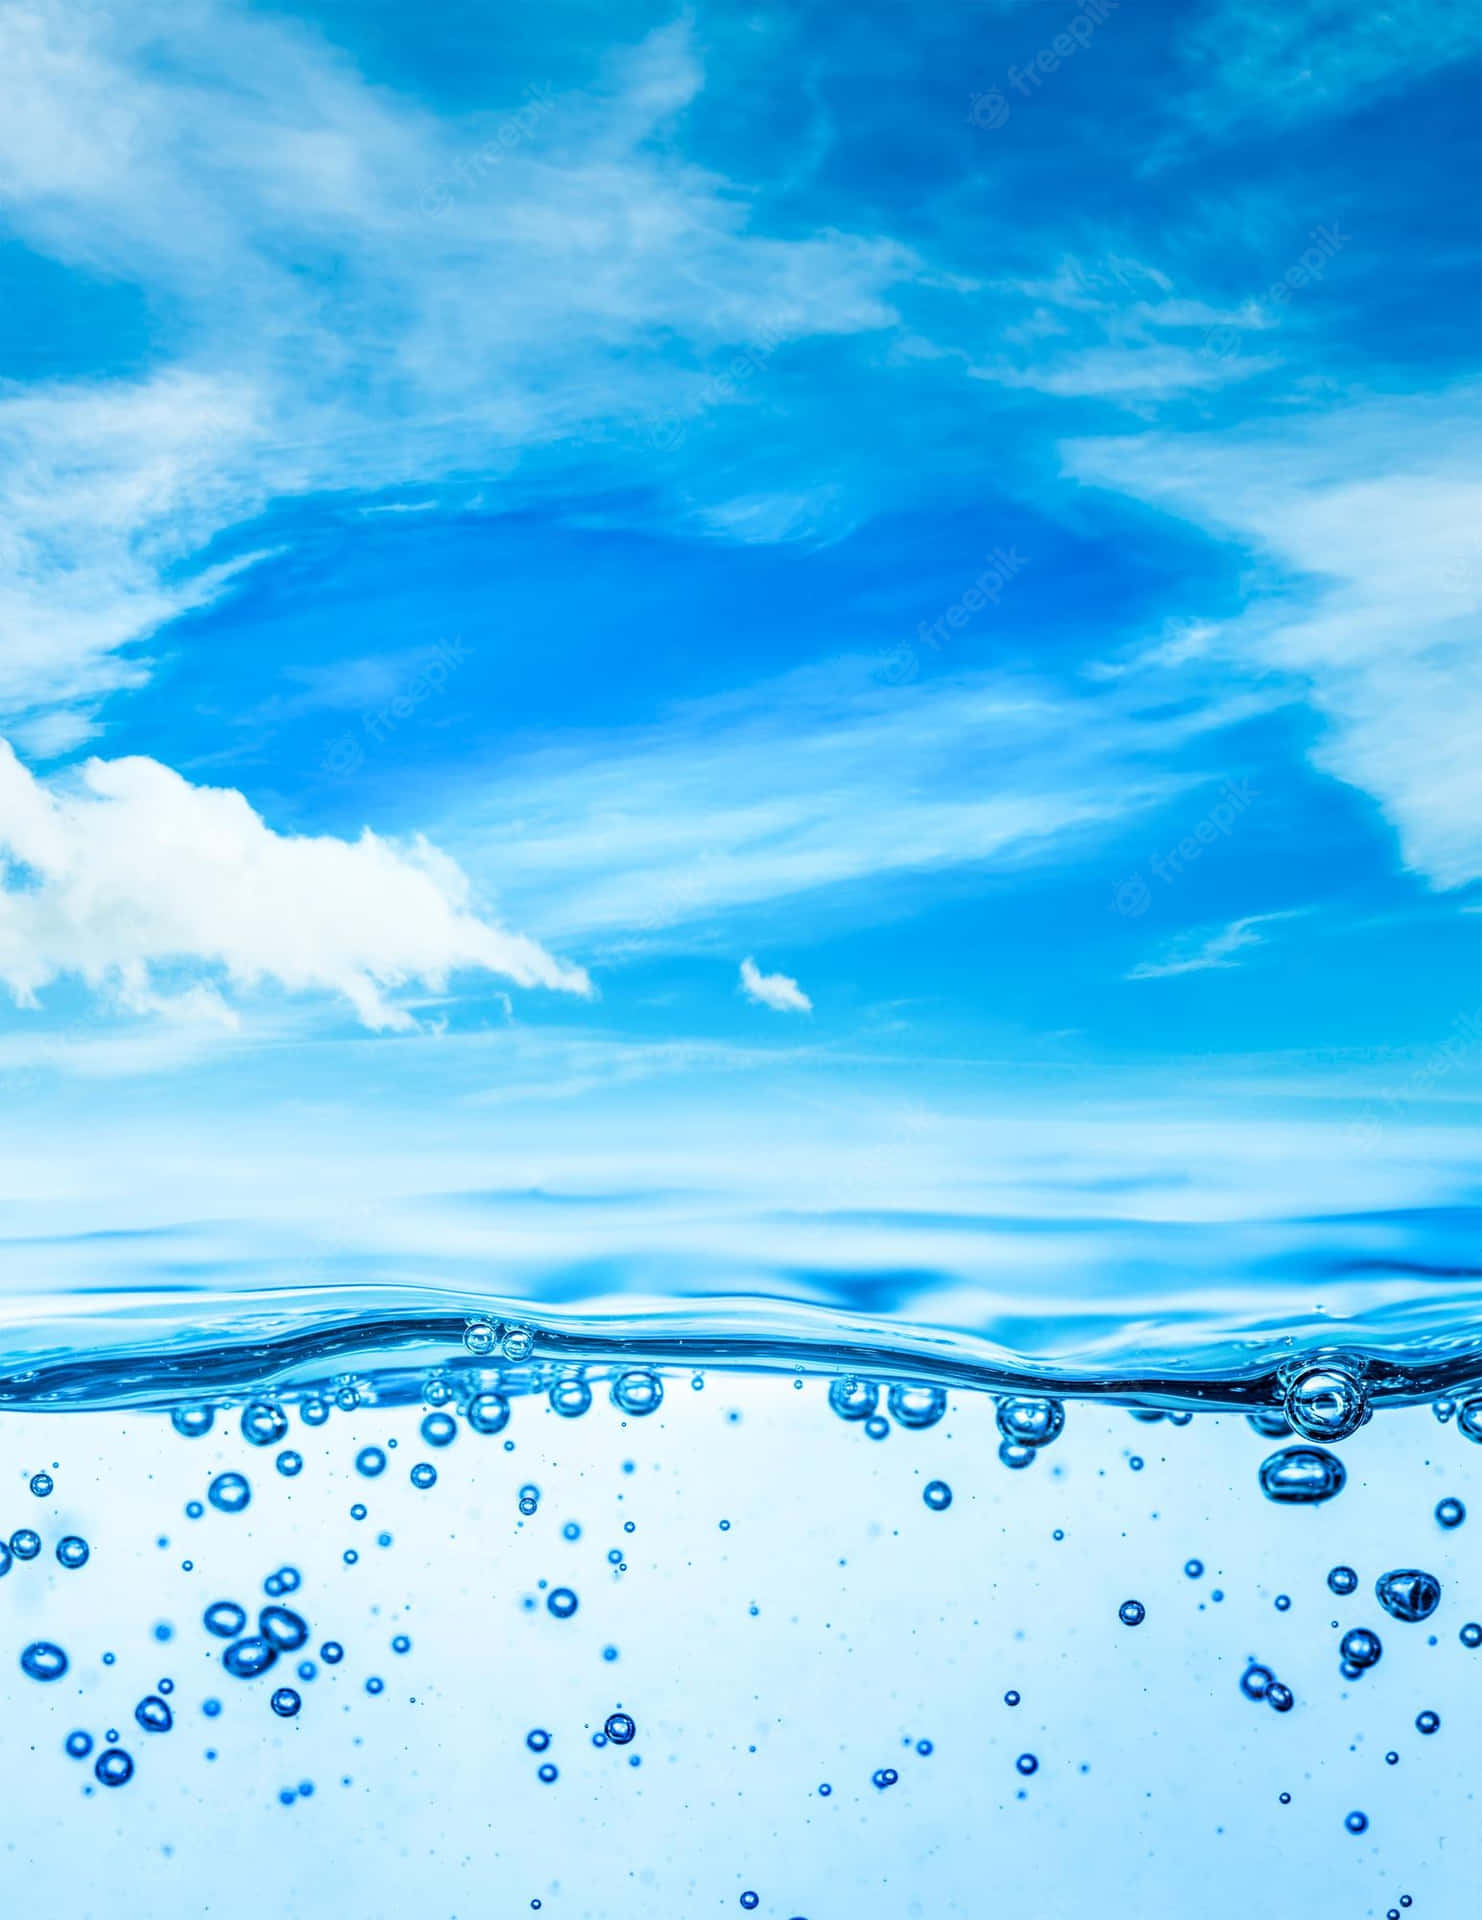 Burbujasde Agua En El Agua Fondo de pantalla